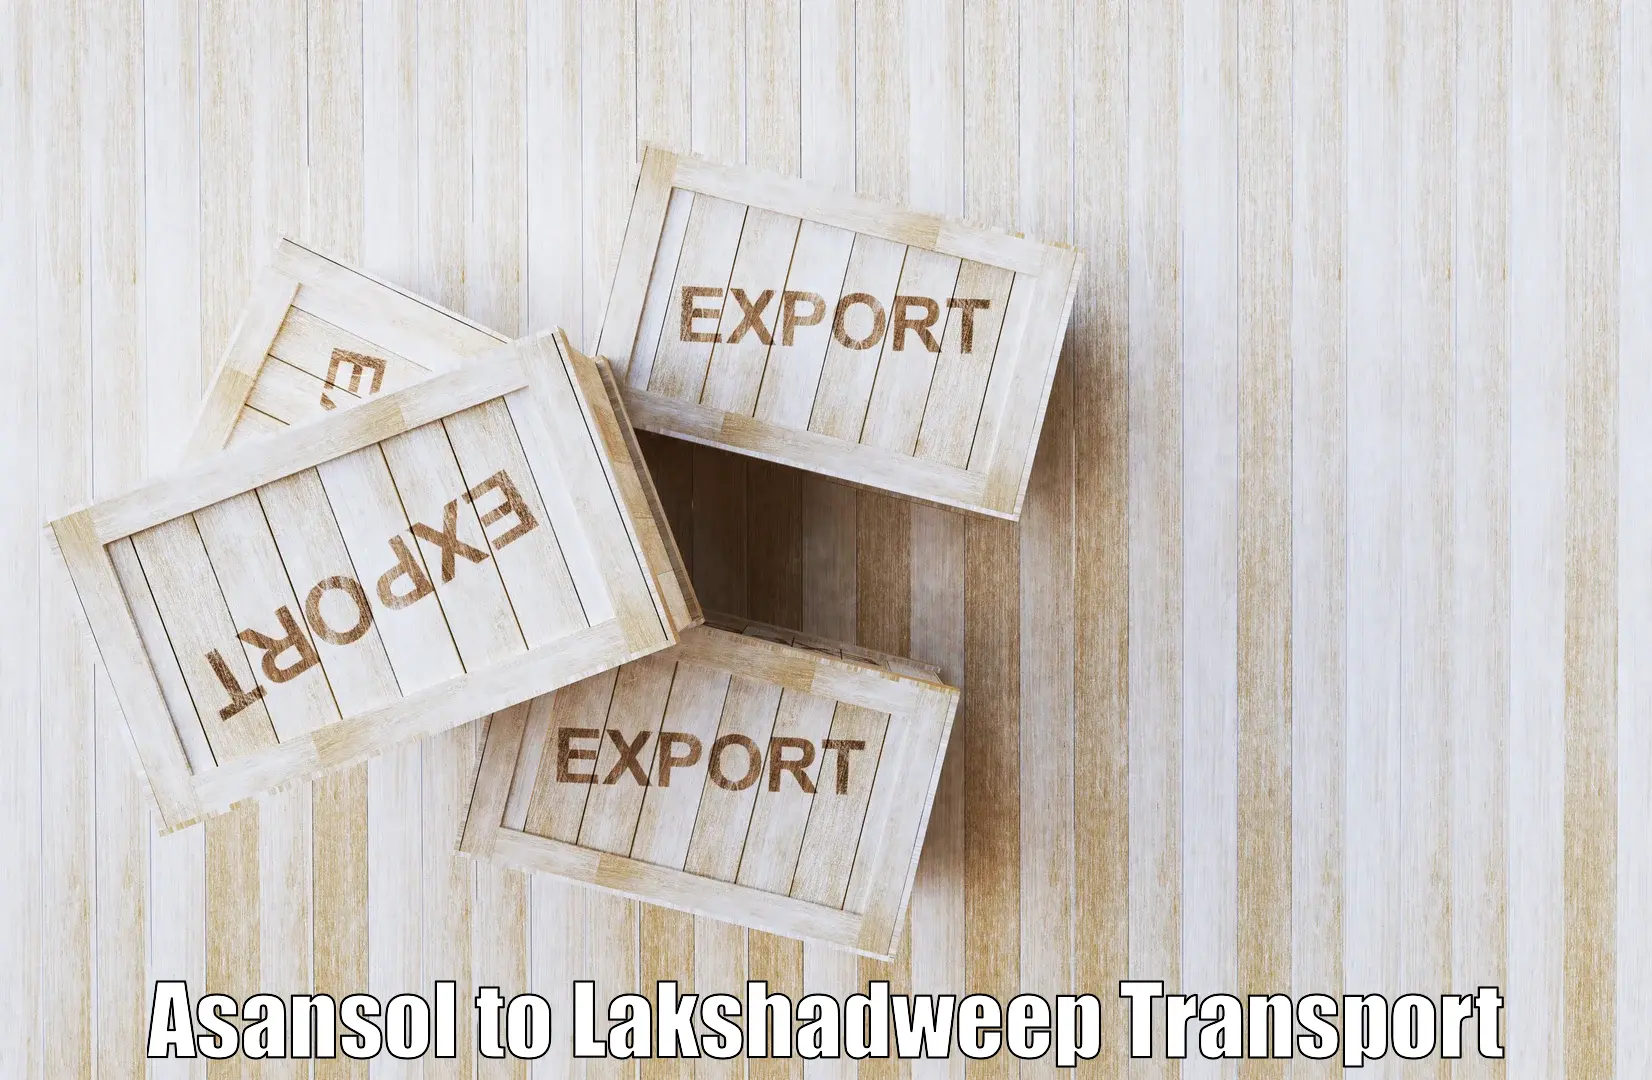 Online transport booking Asansol to Lakshadweep